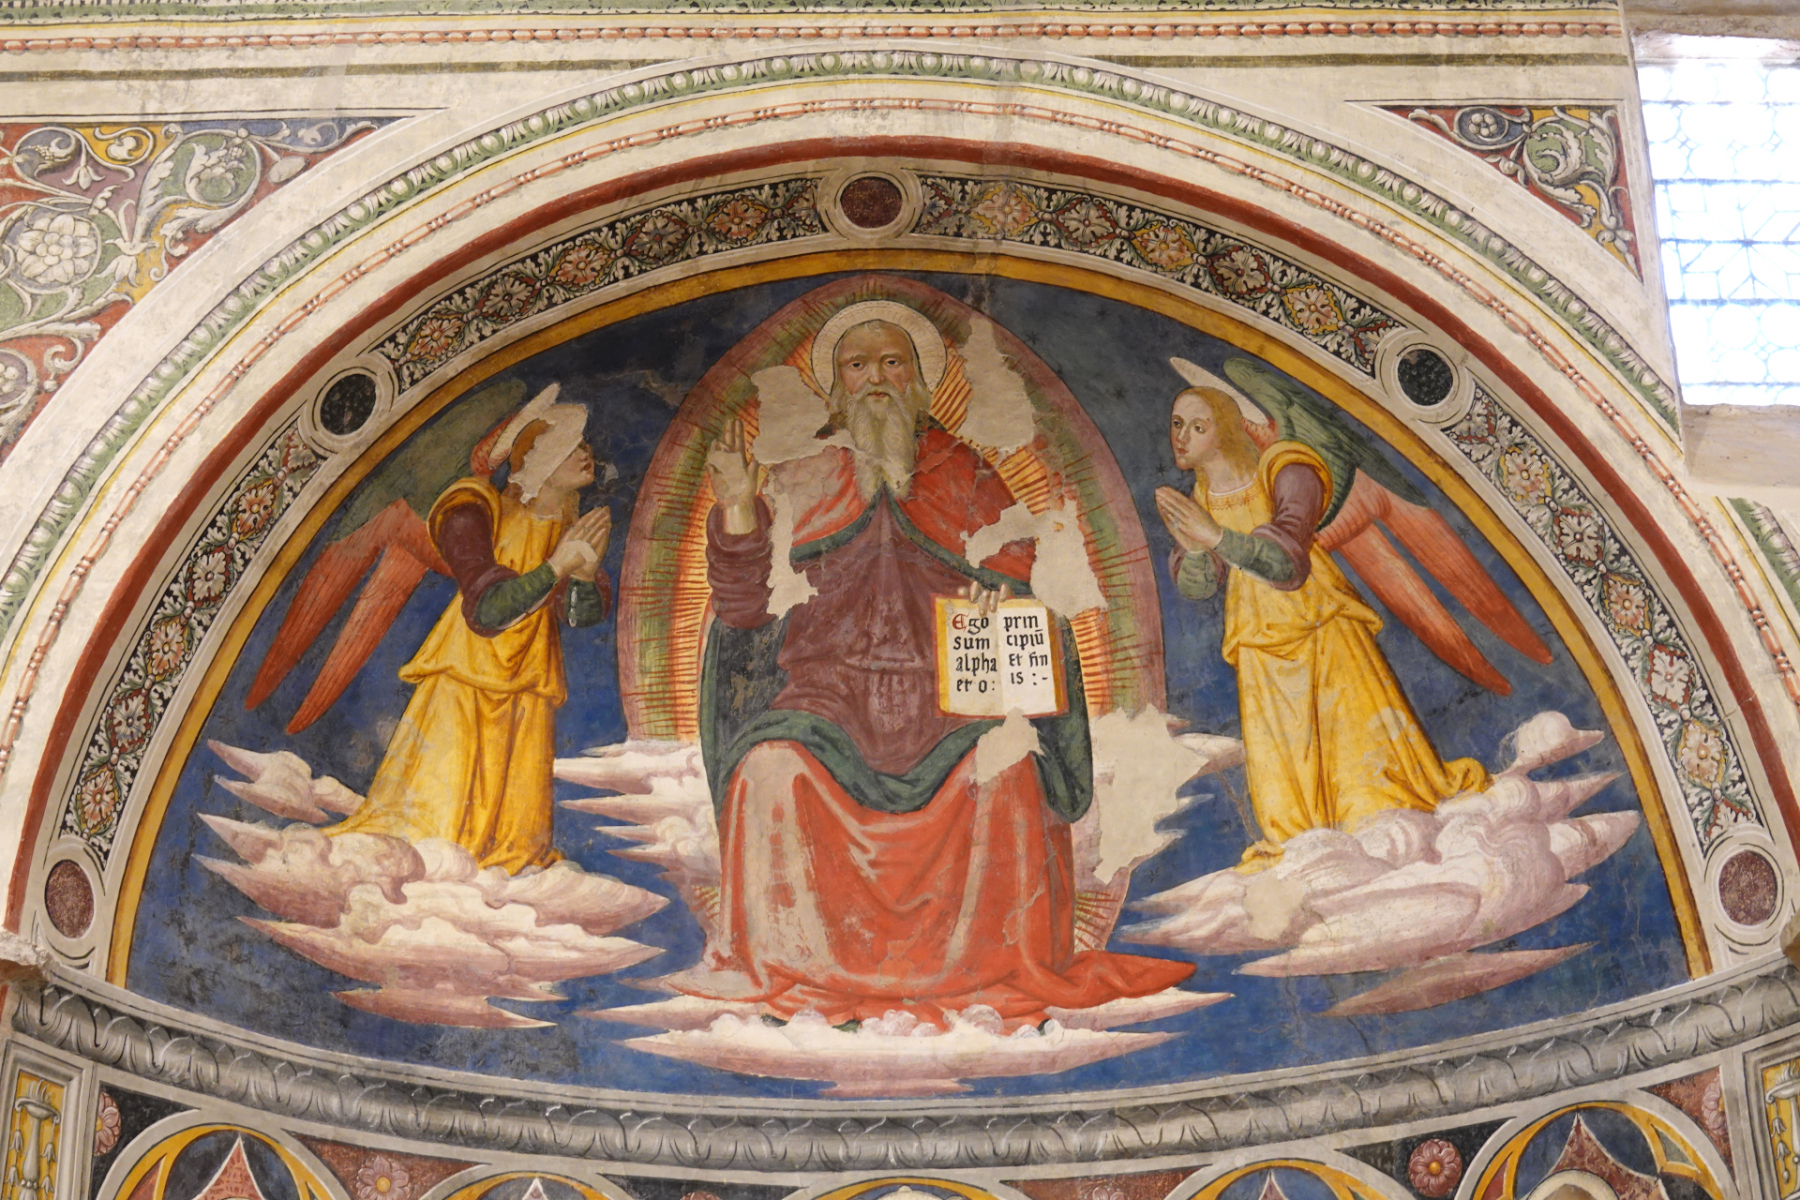 Nicchia dei santi Macario e Bordone - Chiesa di San Michele Arcangelo - Gavelli